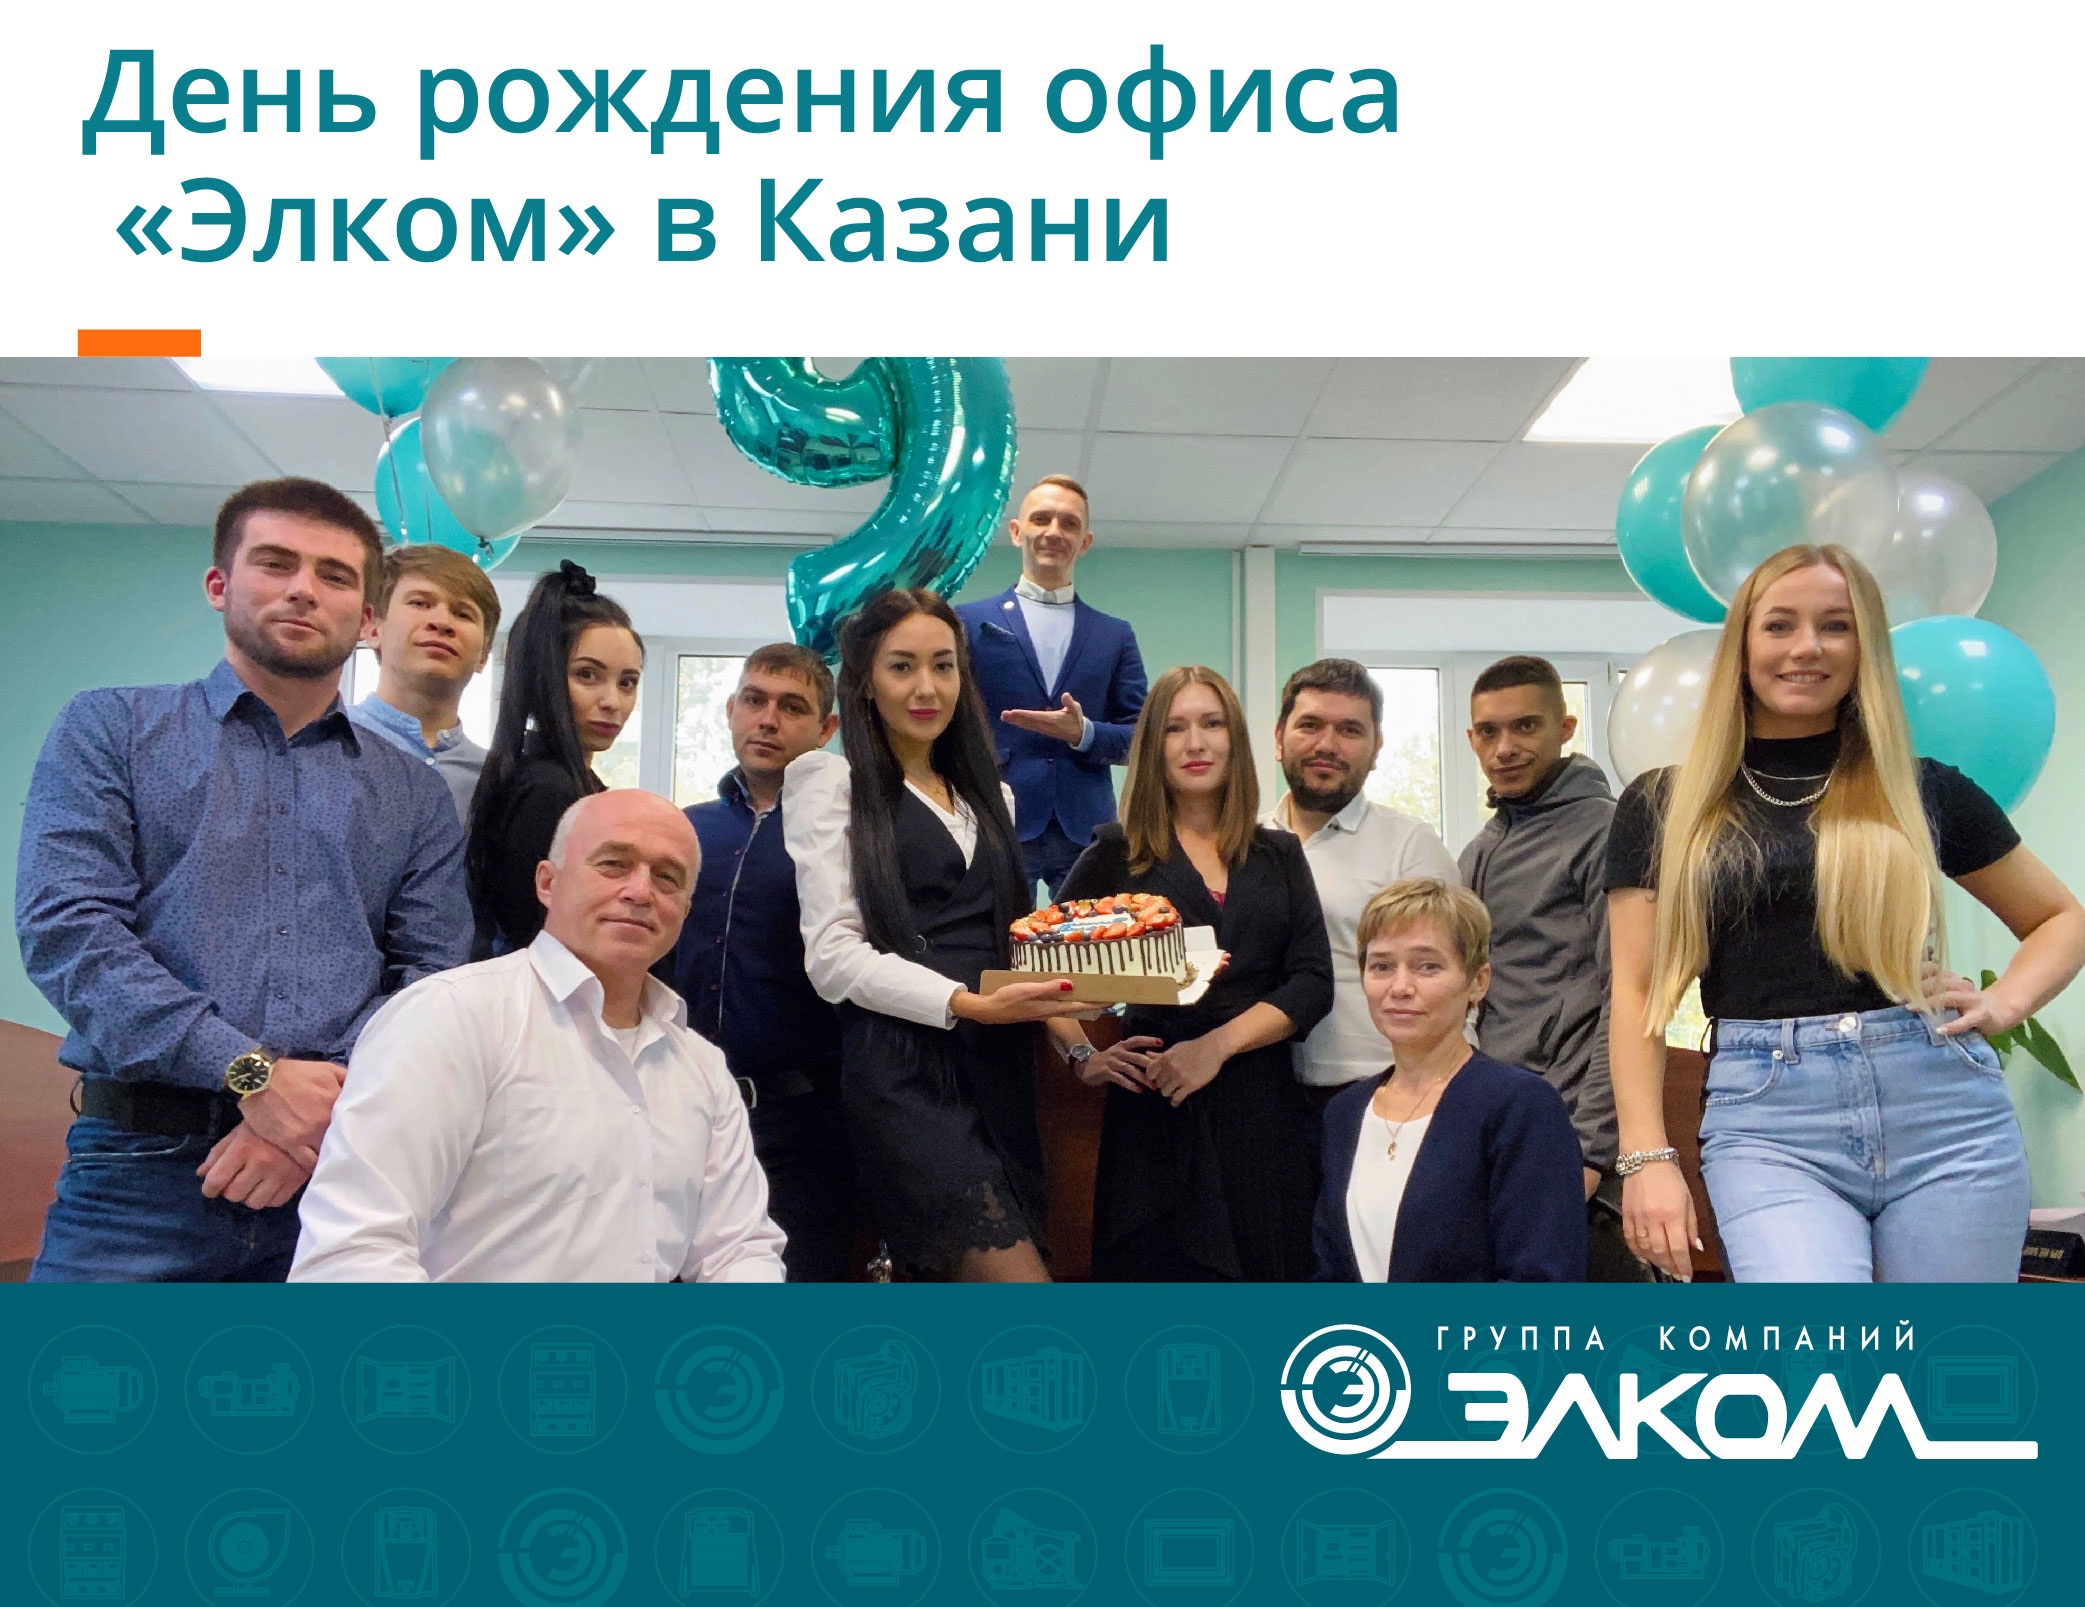 День рождения офиса «Элком» в Казани